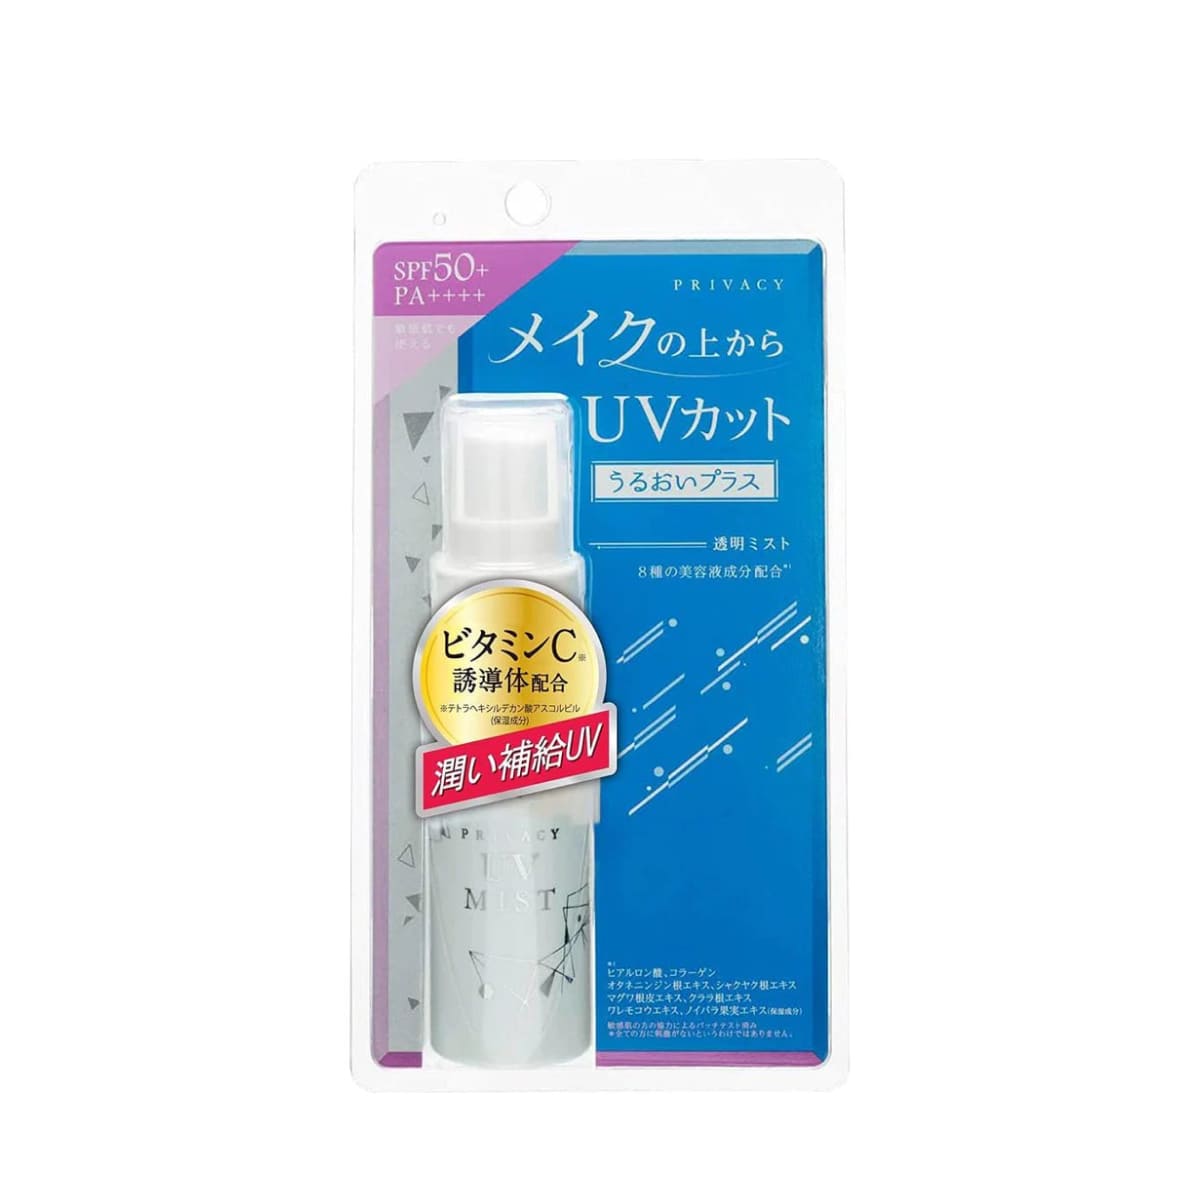 KOKURYUDO PRIVACY UV FACE MIST SPF50+ PA++++  Зволожуючий спрей з SPF захистом від ультрафіолету